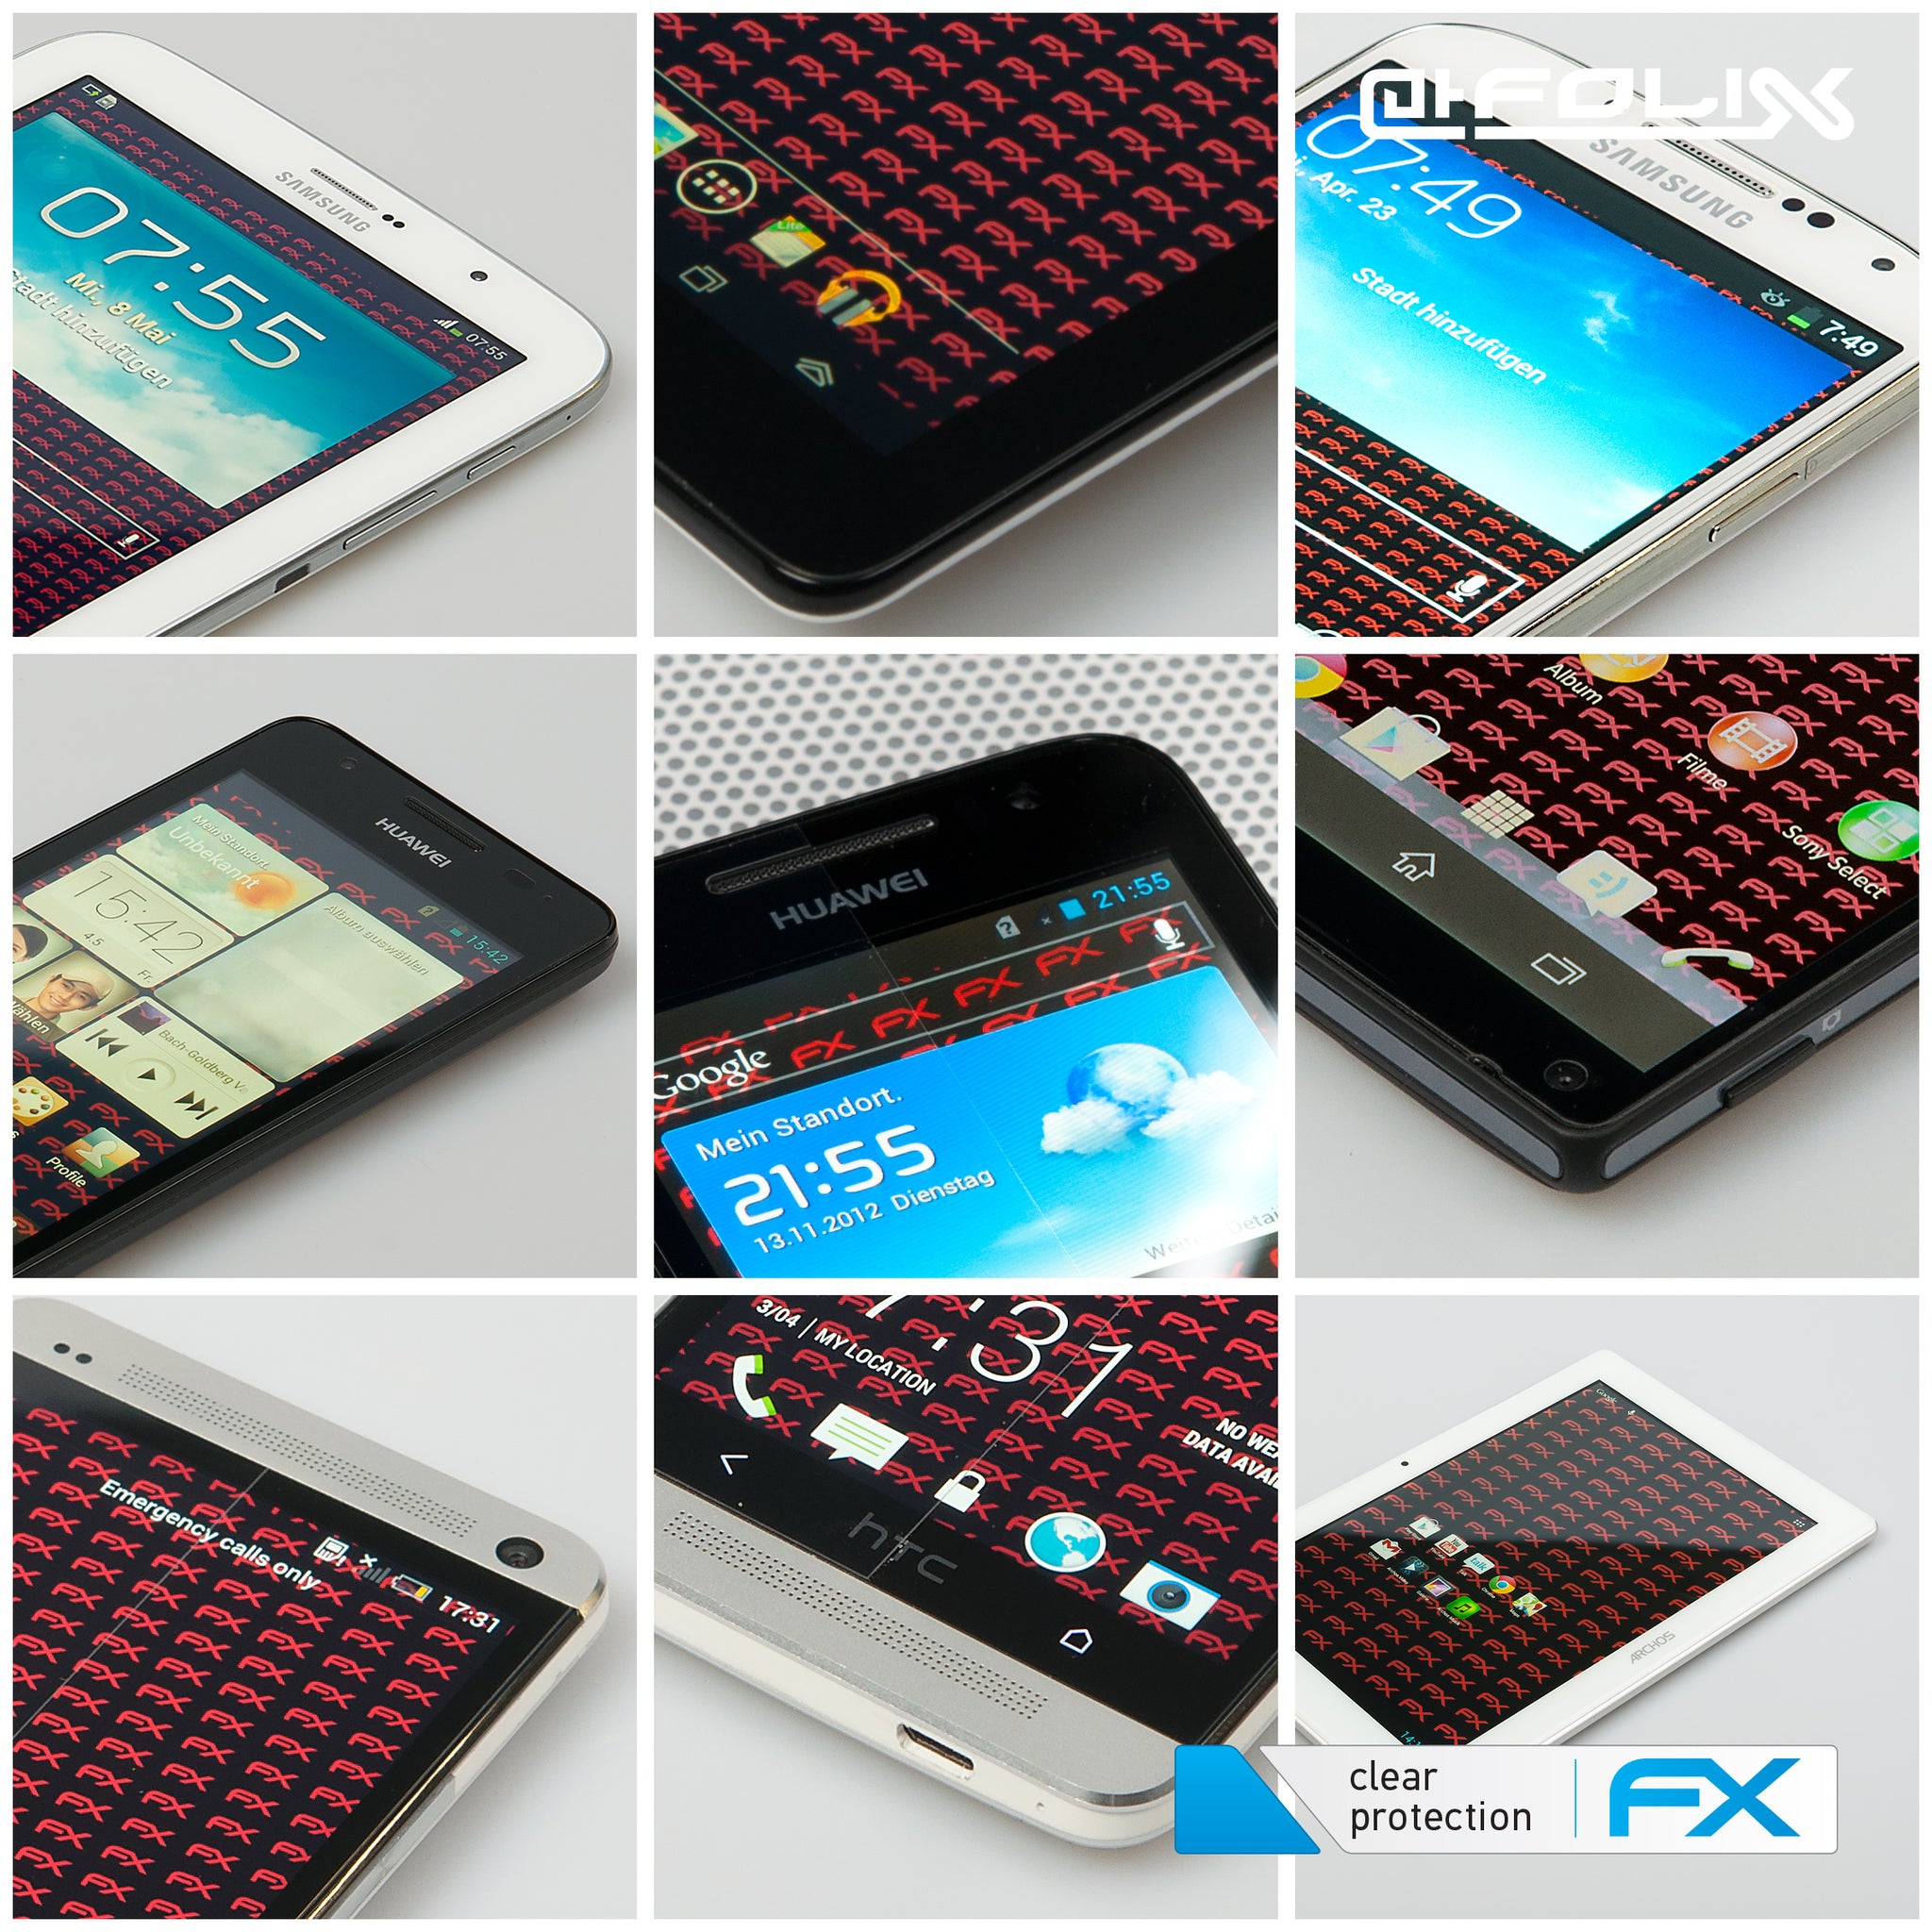 atFoliX Folie fÃ¼r Samsung Galaxy Note 10.1 (2012 Edition) â€